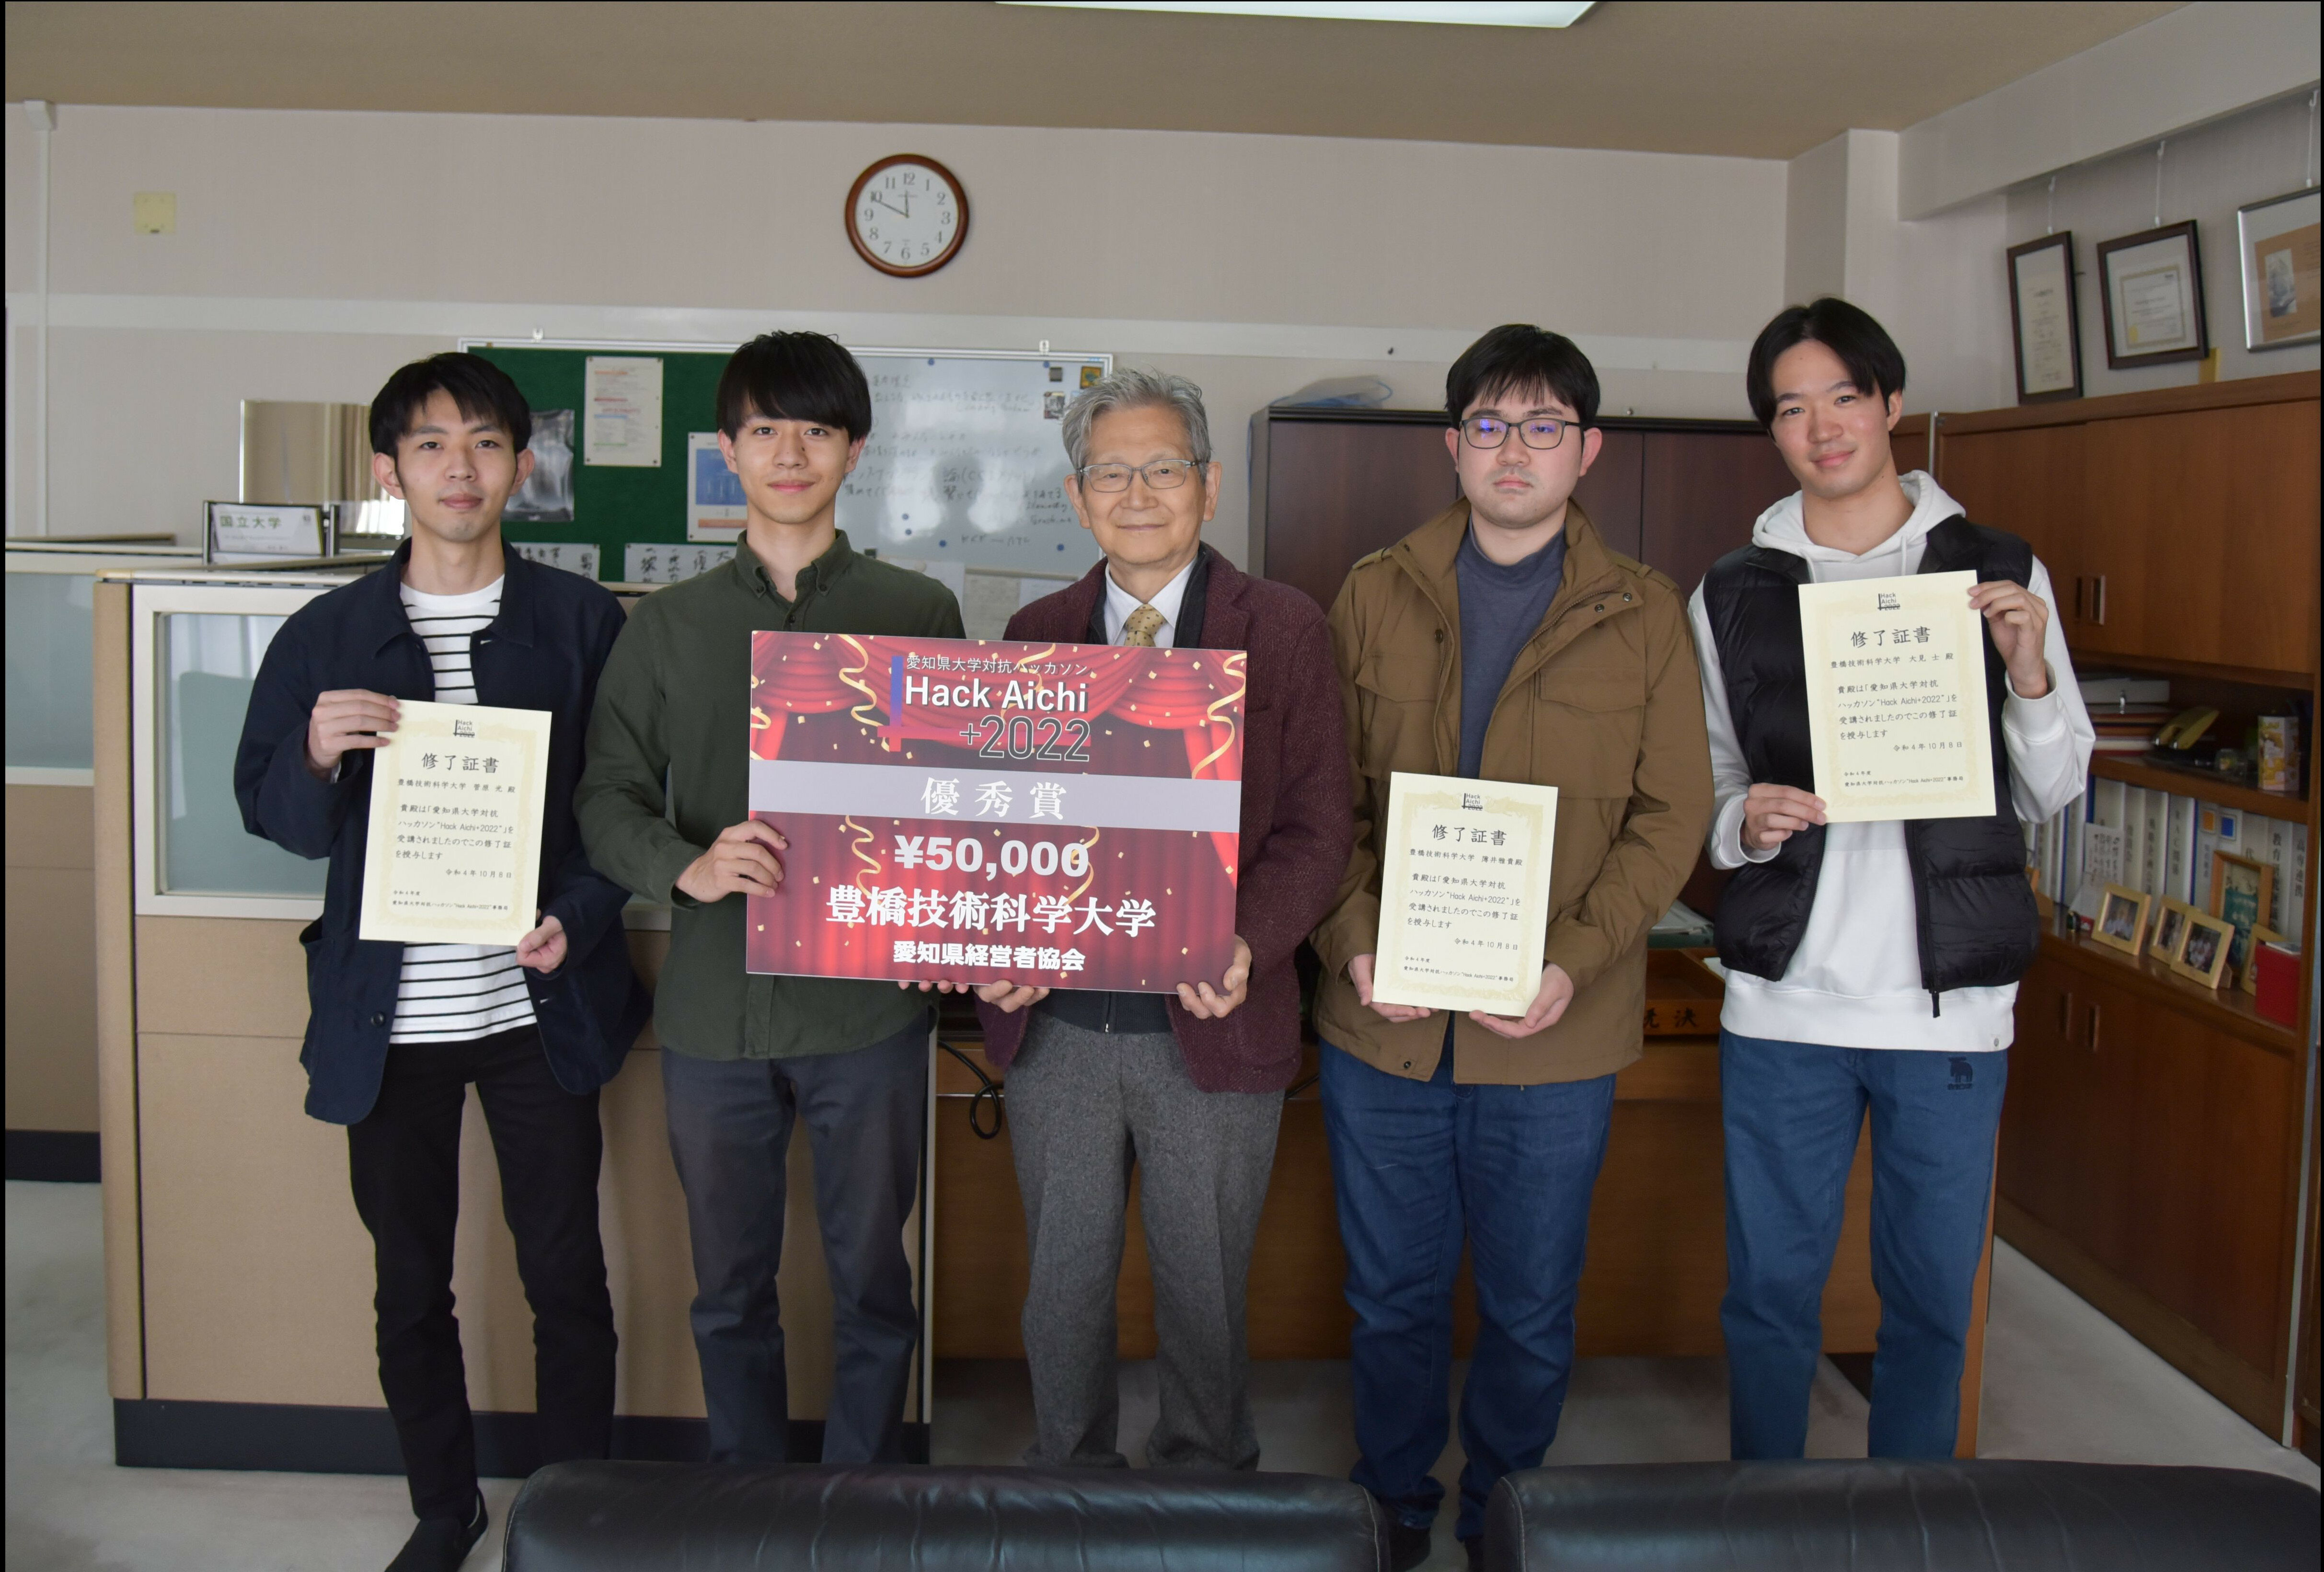 愛知県大学対抗ハッカソンで優秀賞を受賞しました